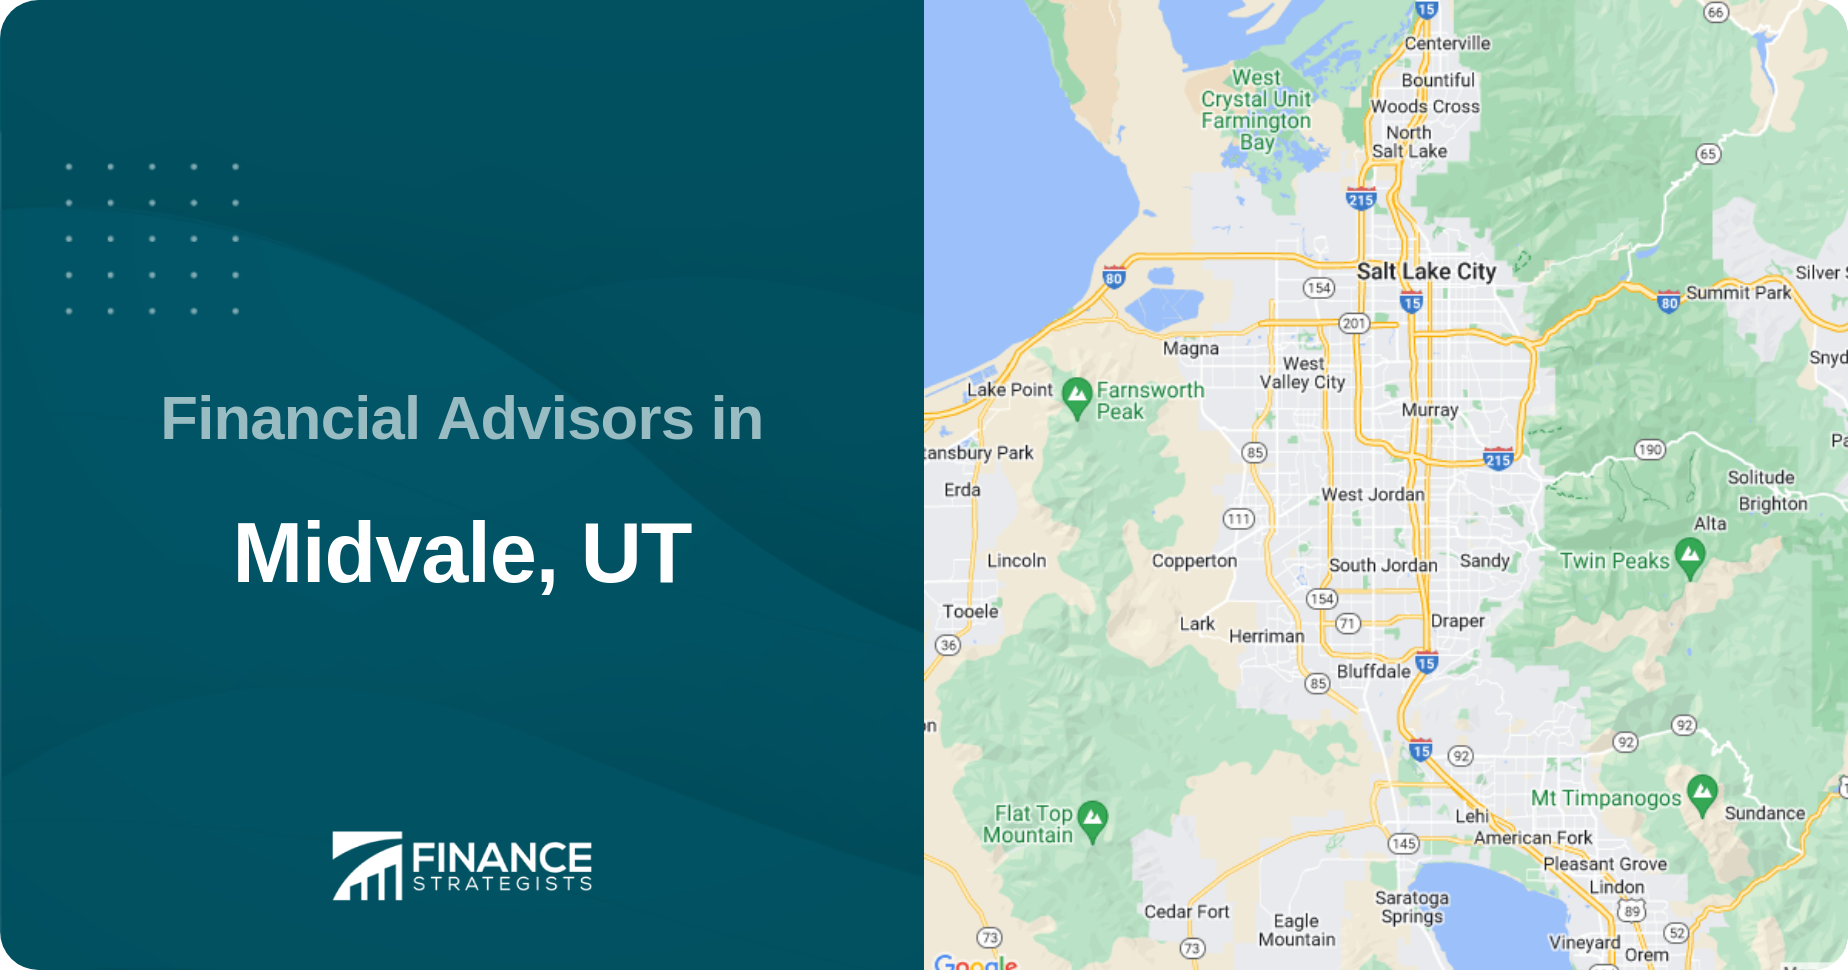 Financial Advisors in Midvale, UT